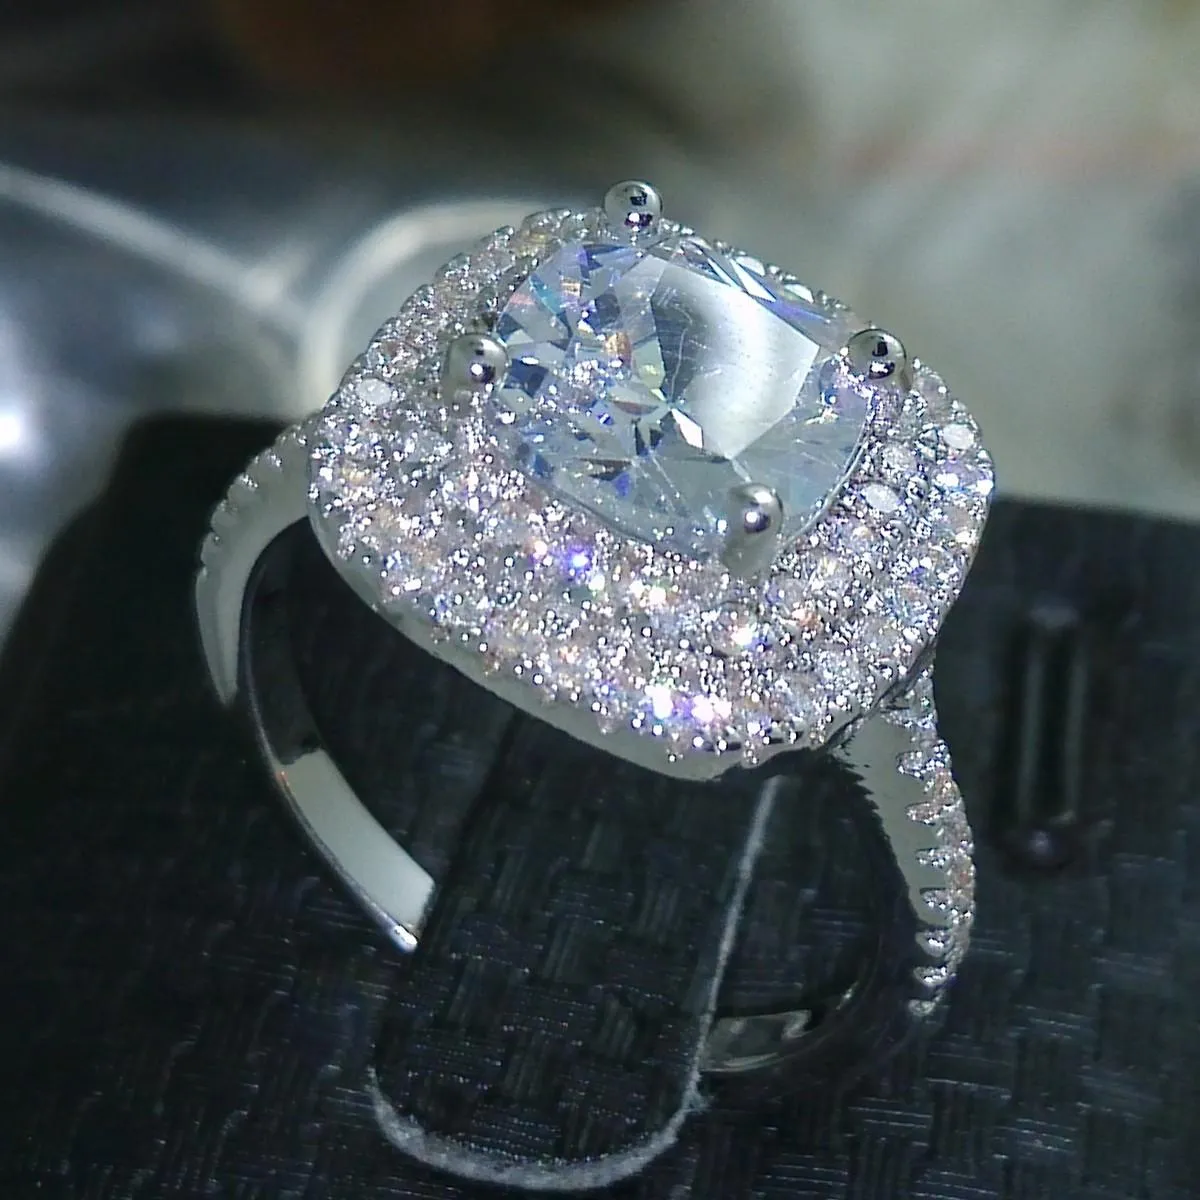 サイズ 5-10 高級ジュエリー 925 スターリングシルバー充填フルトパーズ CZ ダイヤモンド宝石女性の結婚式模擬ダイヤモンドウェディング婚約指輪ギフト